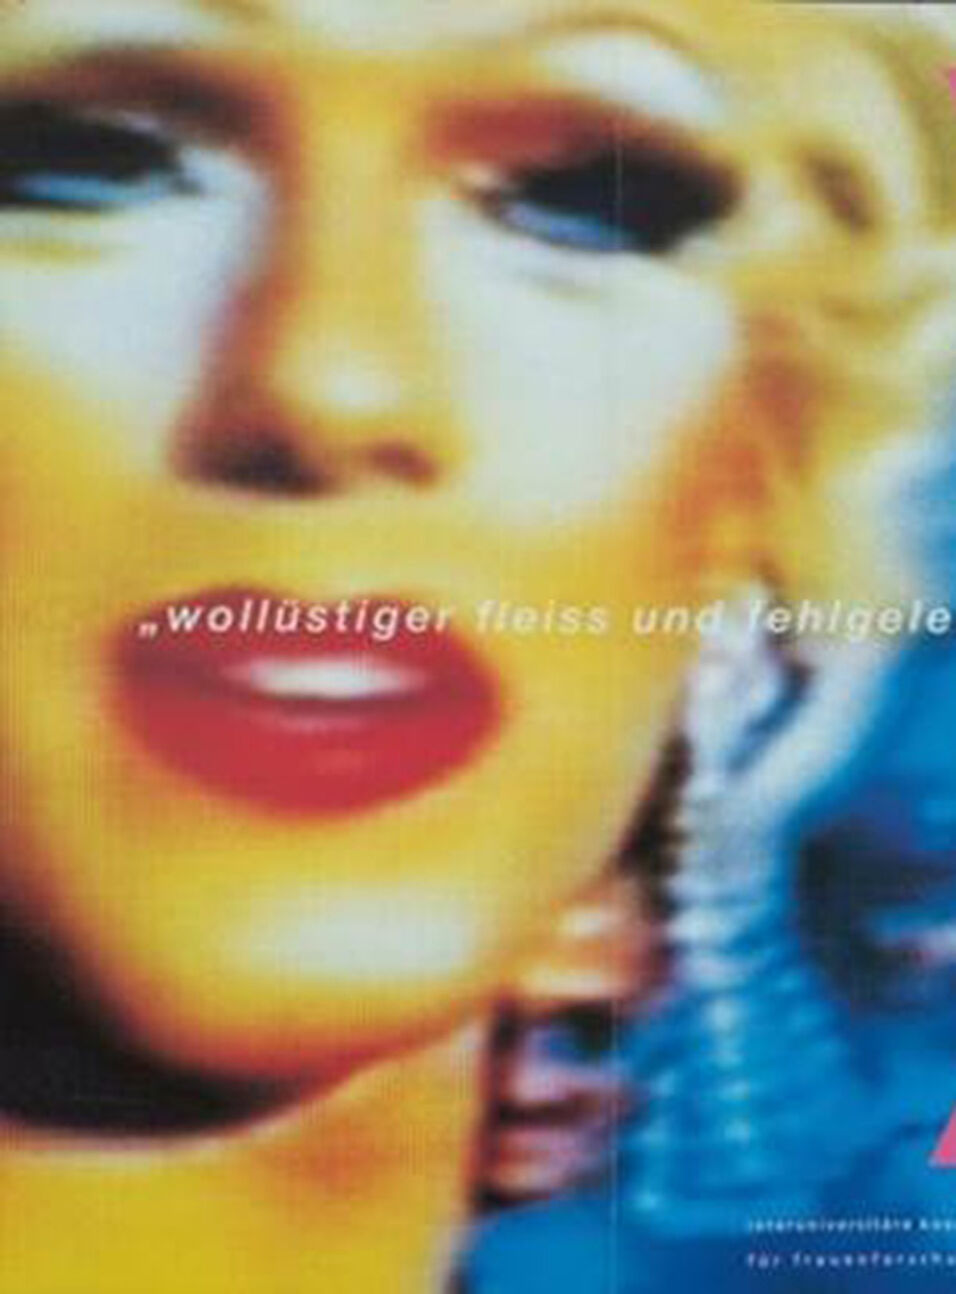 Detailausschnitt aus dem ersten Plakat, der das Gesicht zeigt: helle Haut, rot geschminkte Lippen, blaues Augen-Make-up, blonde Haare, eckiges Kinn.